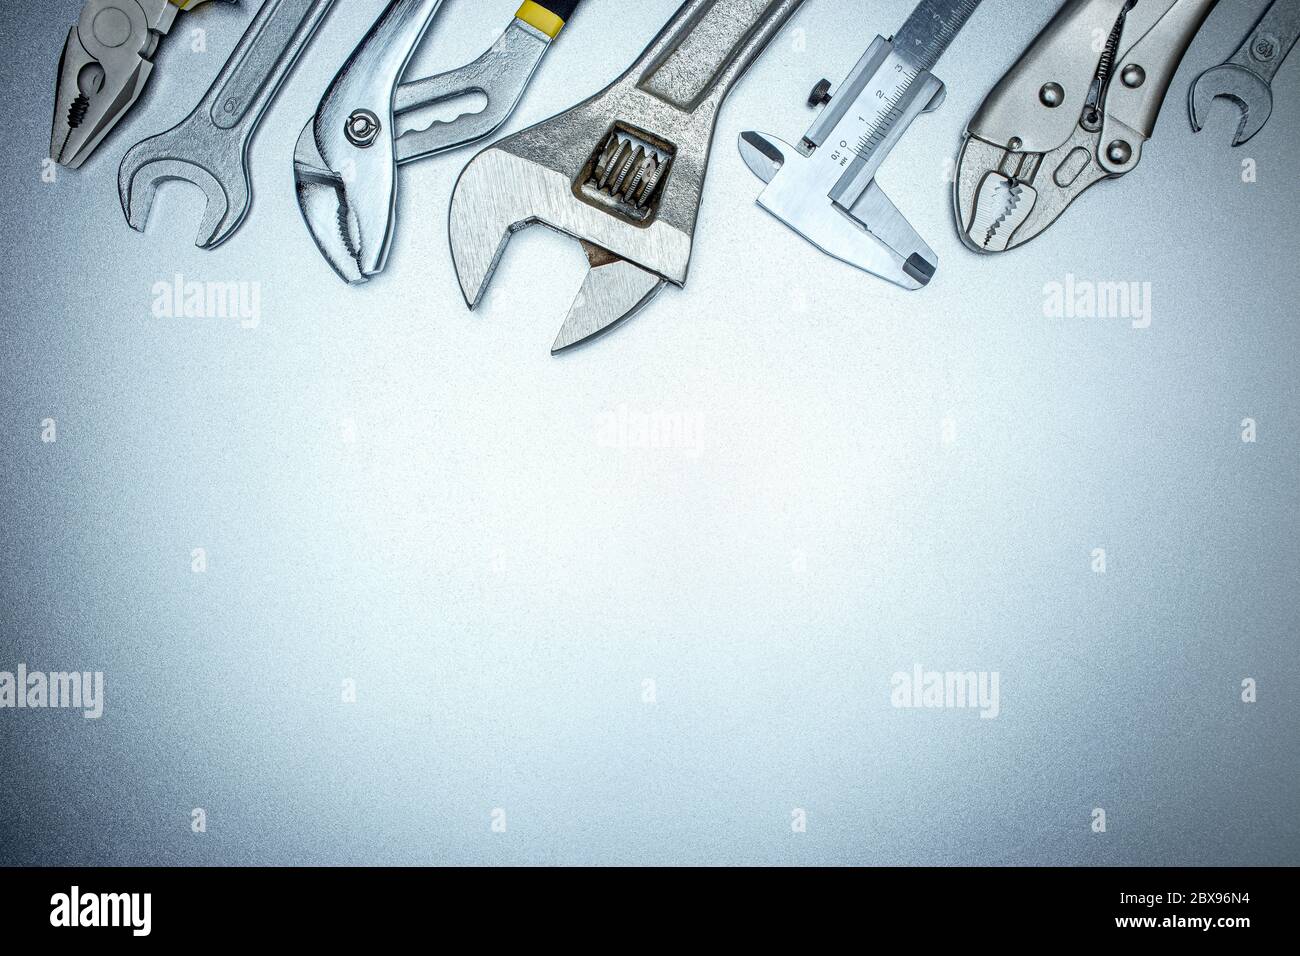 vista dall'alto del set di utensili manuali su sfondo grigio, incluse chiavi, chiavi, pinze e calibro a corsoio Foto Stock